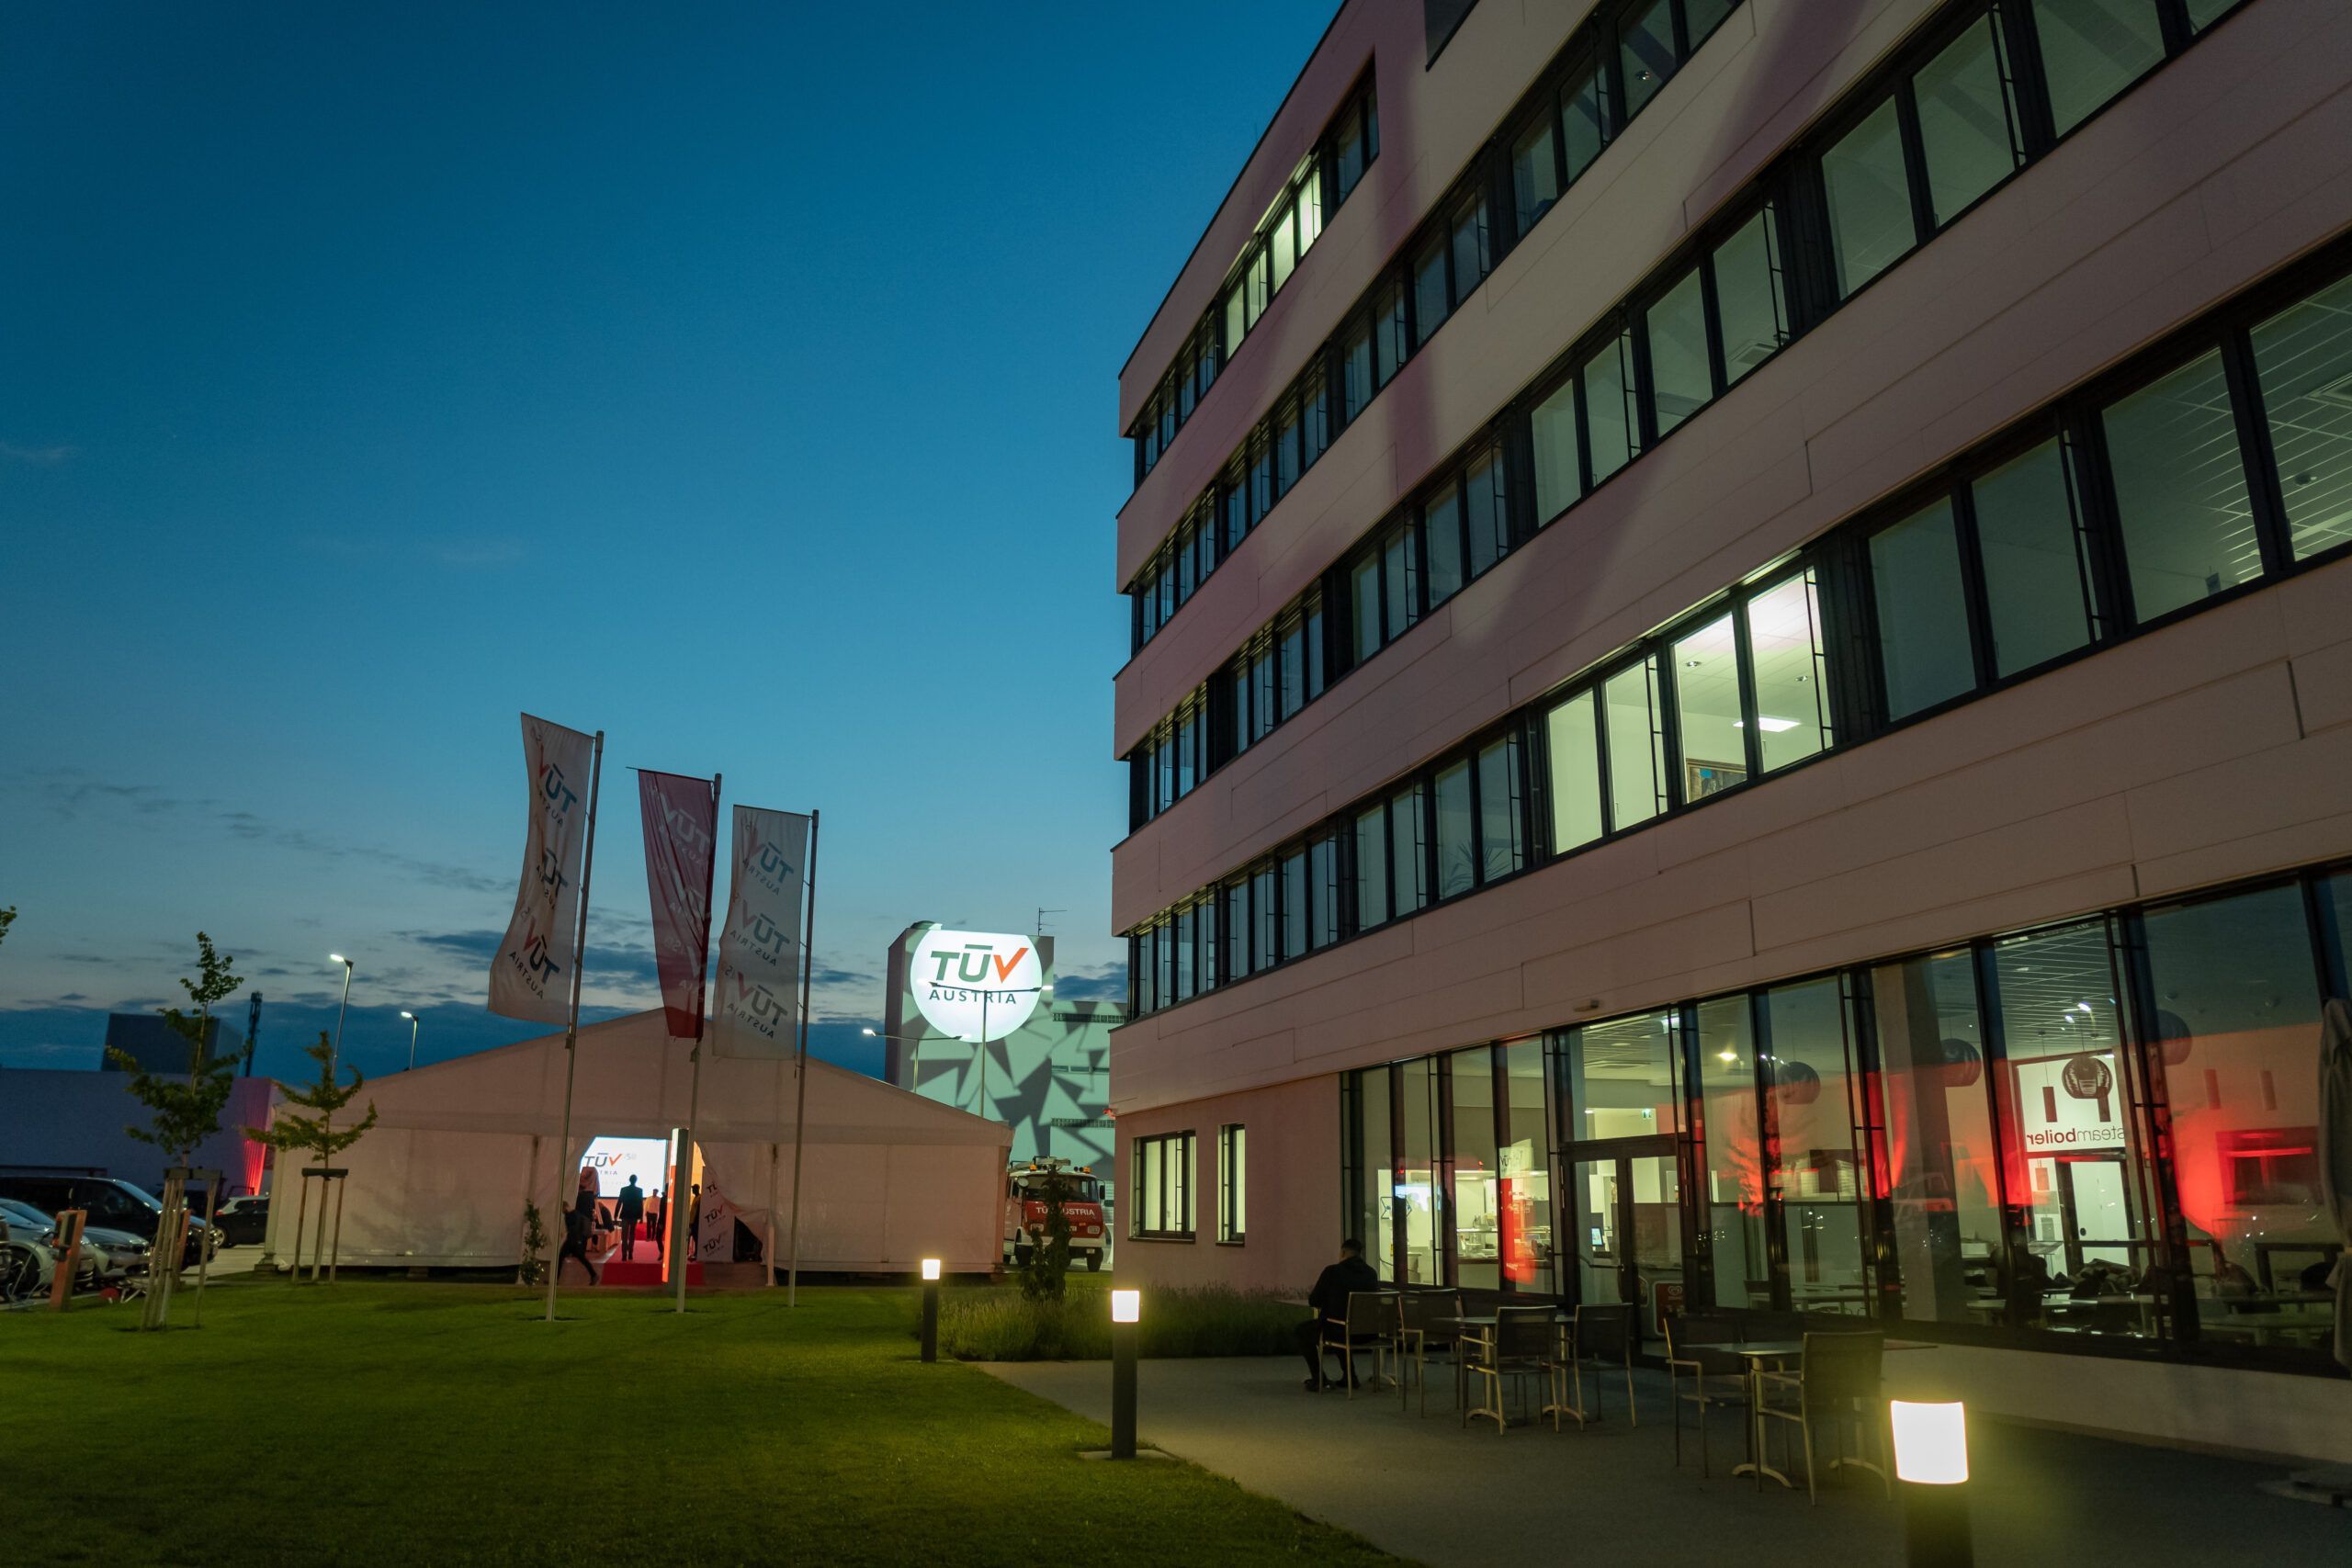 Il TÜV AUSTRIA Technology & Innovation Center di Vienna ha ospitato la celebrazione di "TÜV AUSTRIA 150", in occasione del 150° anniversario del gruppo austriaco indipendente TÜV AUSTRIA, attivo in 31 Paesi con soluzioni nei settori della sicurezza, della qualità, dell'istruzione e della formazione. Il TÜV AUSTRIA Technology & Innovation Center ospita la più grande camera anecoica dell'Austria e il più grande tomografo computerizzato industriale, il Safe Sec Lab con il suo focus sulla "Sicurezza nell'Industria", le simulazioni della rete elettrica e dell'ambiente, le soluzioni per il settore automobilistico, le sale di prova per la sicurezza dei prodotti e dei DPI e il centro di formazione per le prove non distruttive sui materiali, oltre ad altre strutture per l'ulteriore sviluppo della sicurezza tecnica. (C) TÜV AUSTRIA, Christian Kraus